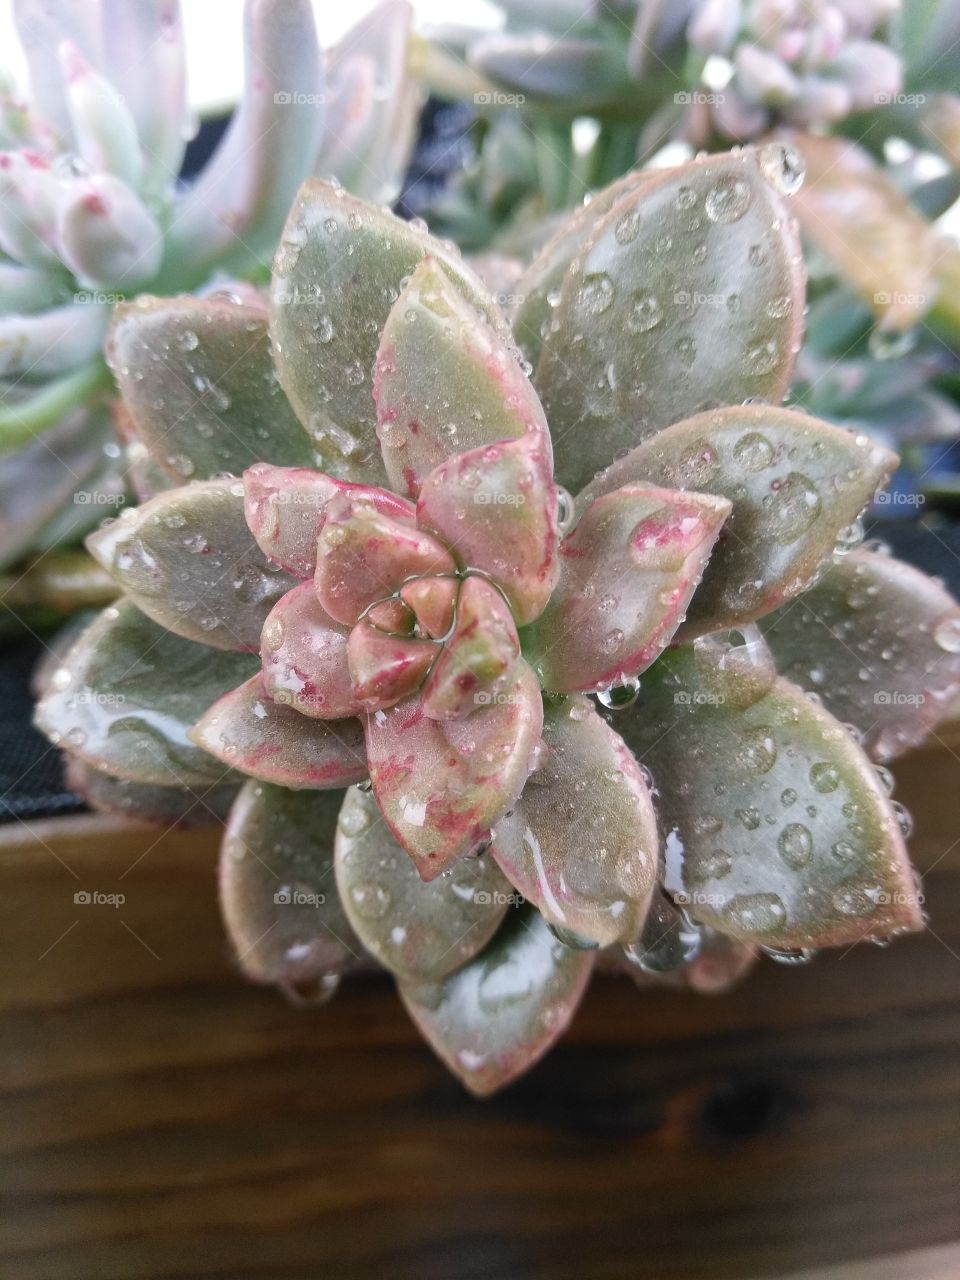 Drops on a Succulent